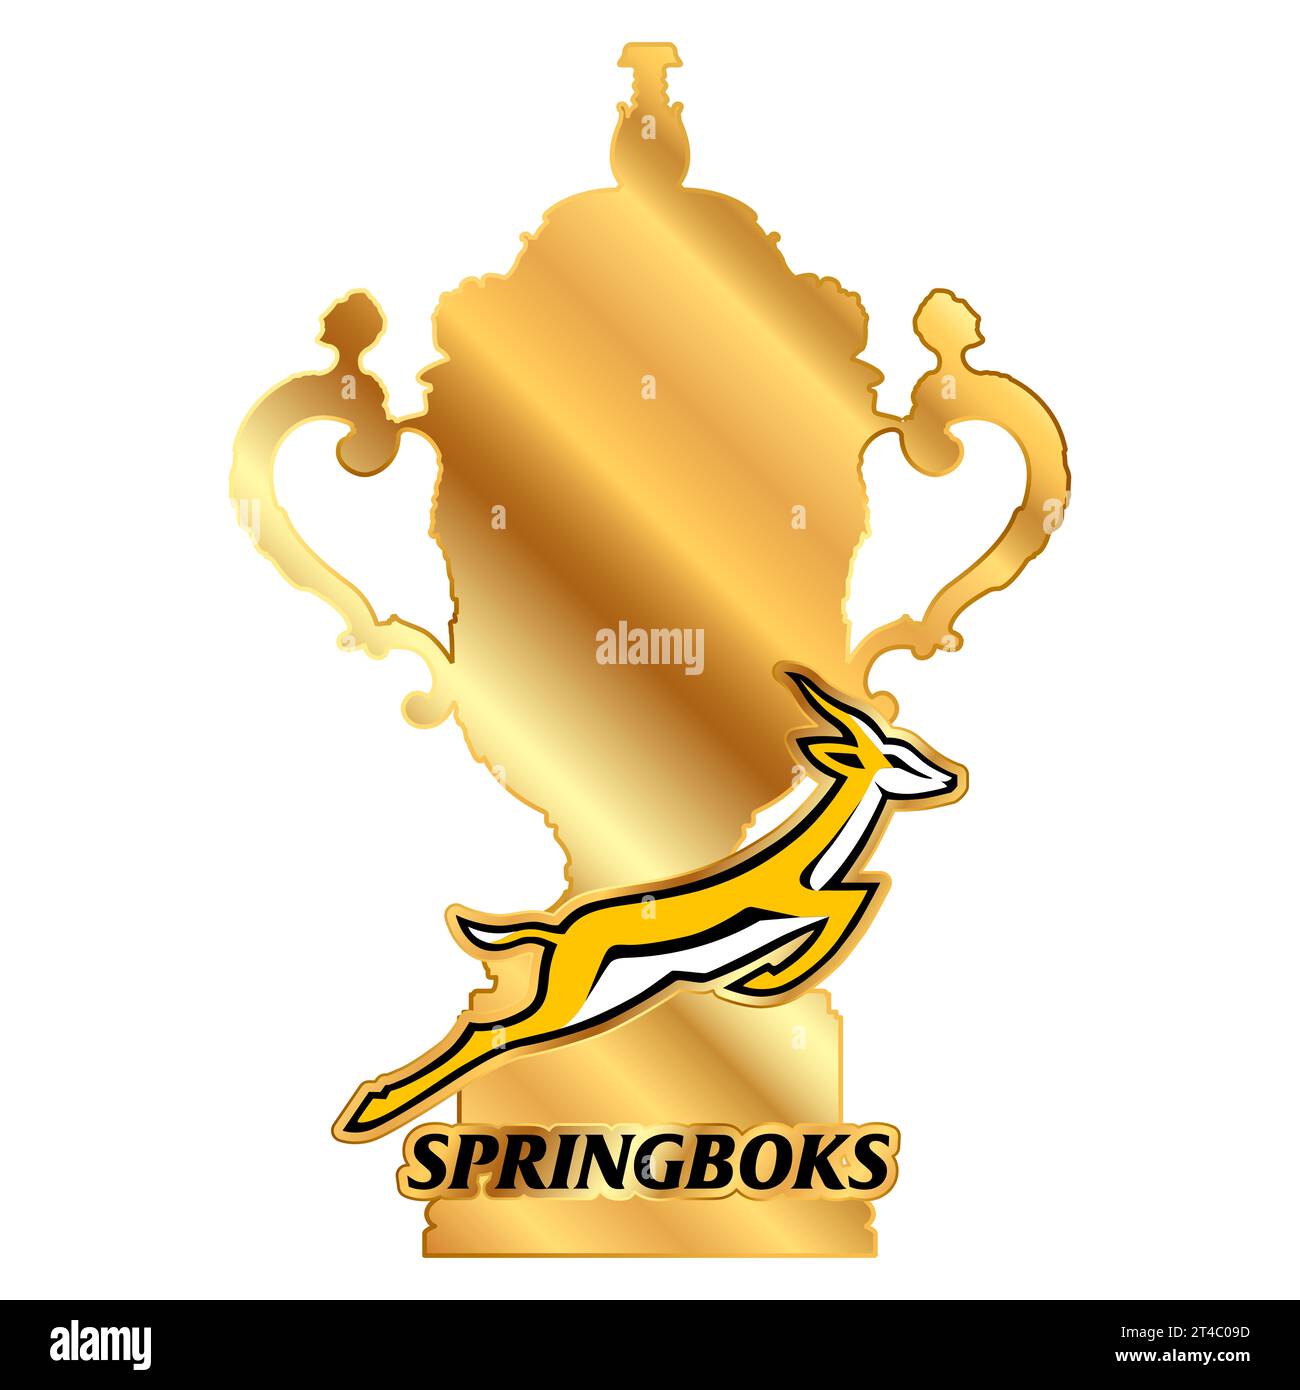 Coupe du monde de rugby 2023 et champion de l'équipe sud-africaine Springboks logo, champions du monde, illustration Banque D'Images